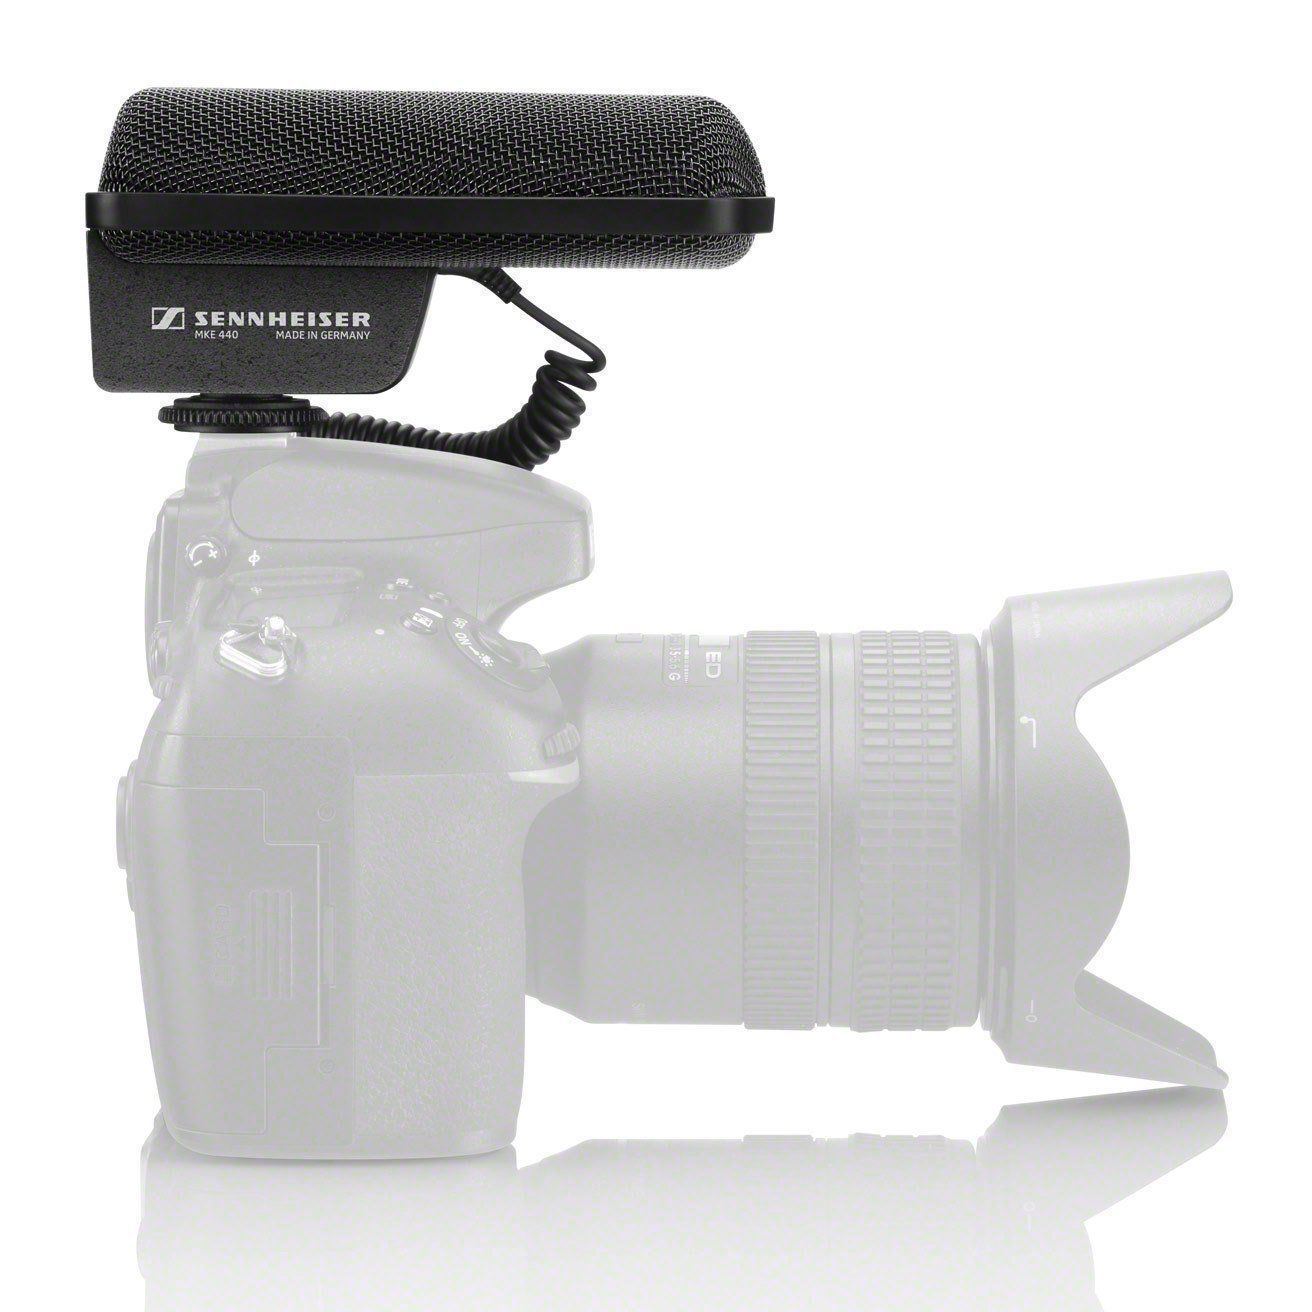 Sennheiser MKE 440 Professional Stereo Shotgun Microphone (MKE 440)